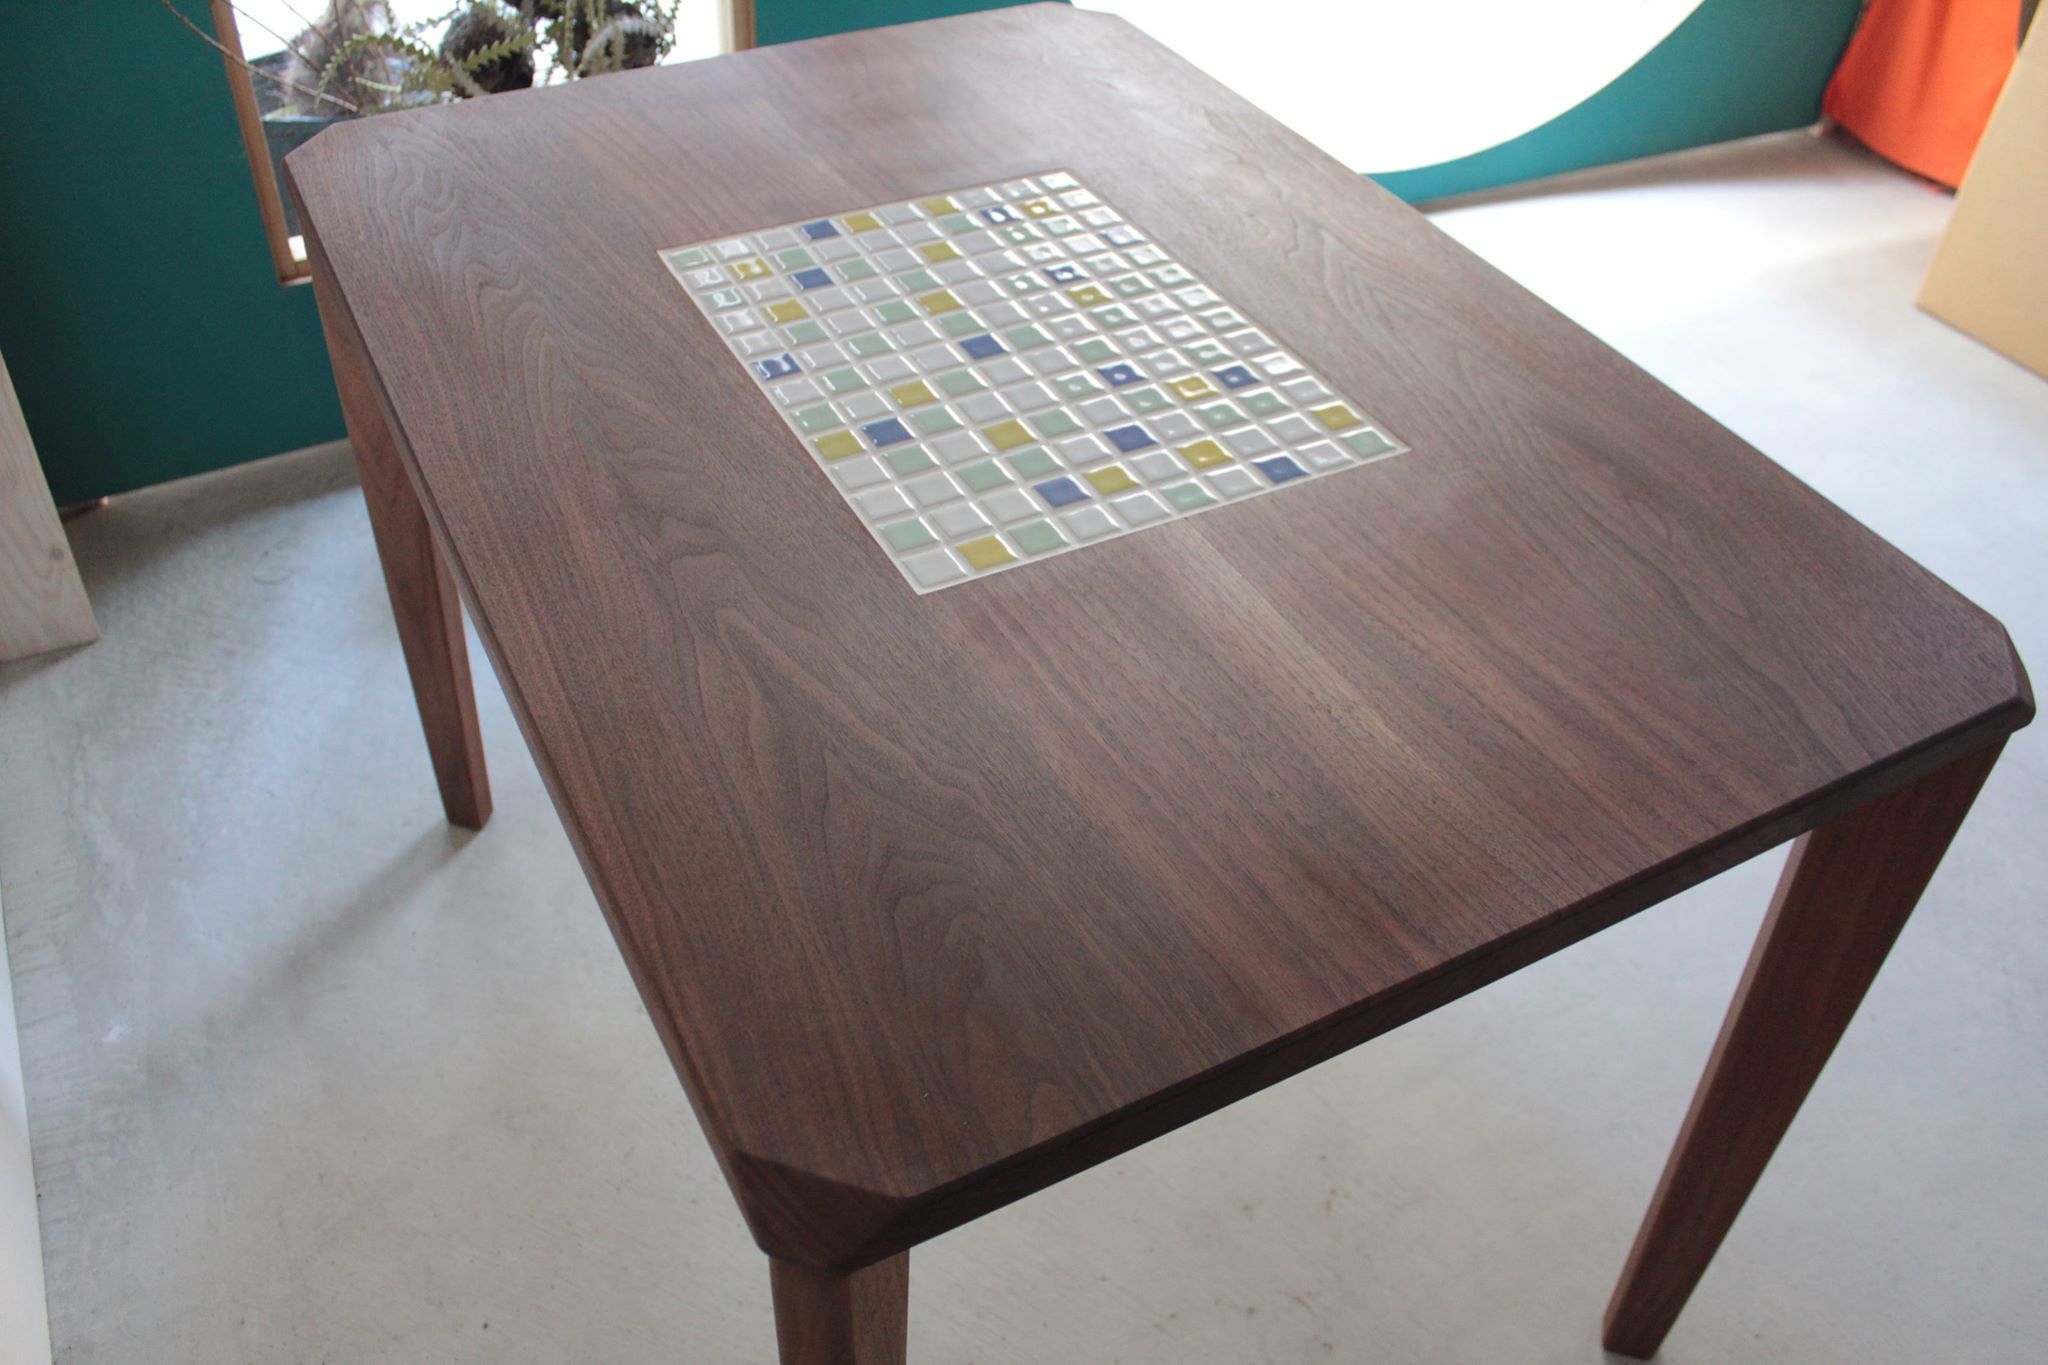 オーダーメイドテーブルの製作事例を特集。オンリーワンを創ります。